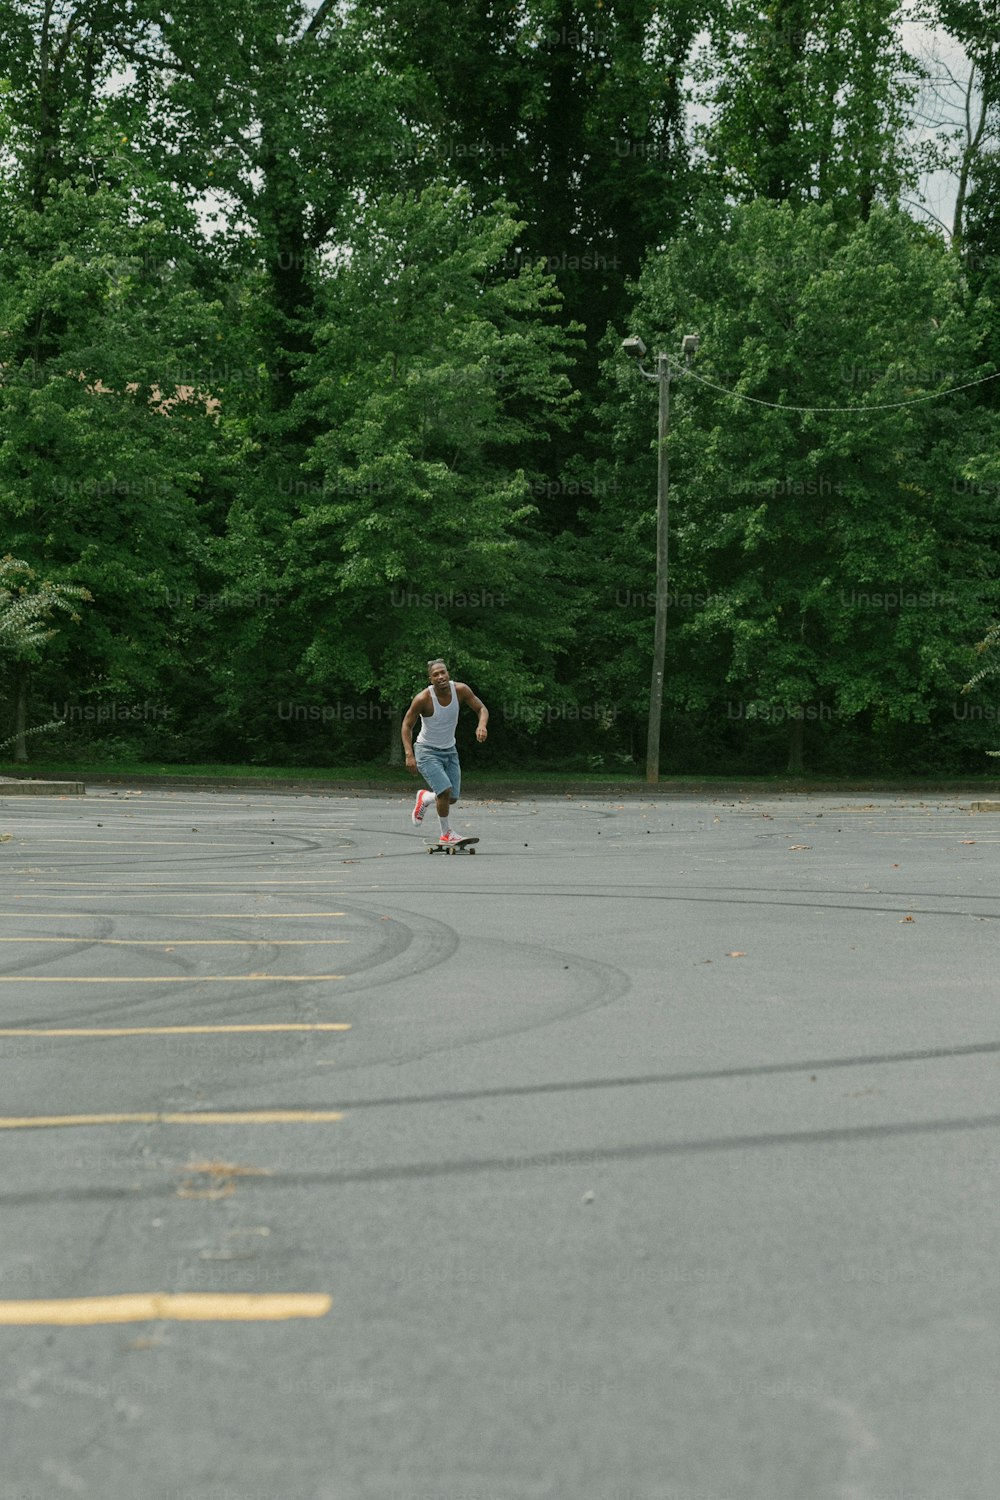 주차장을 가로질러 스케이트보드를 타는 남자